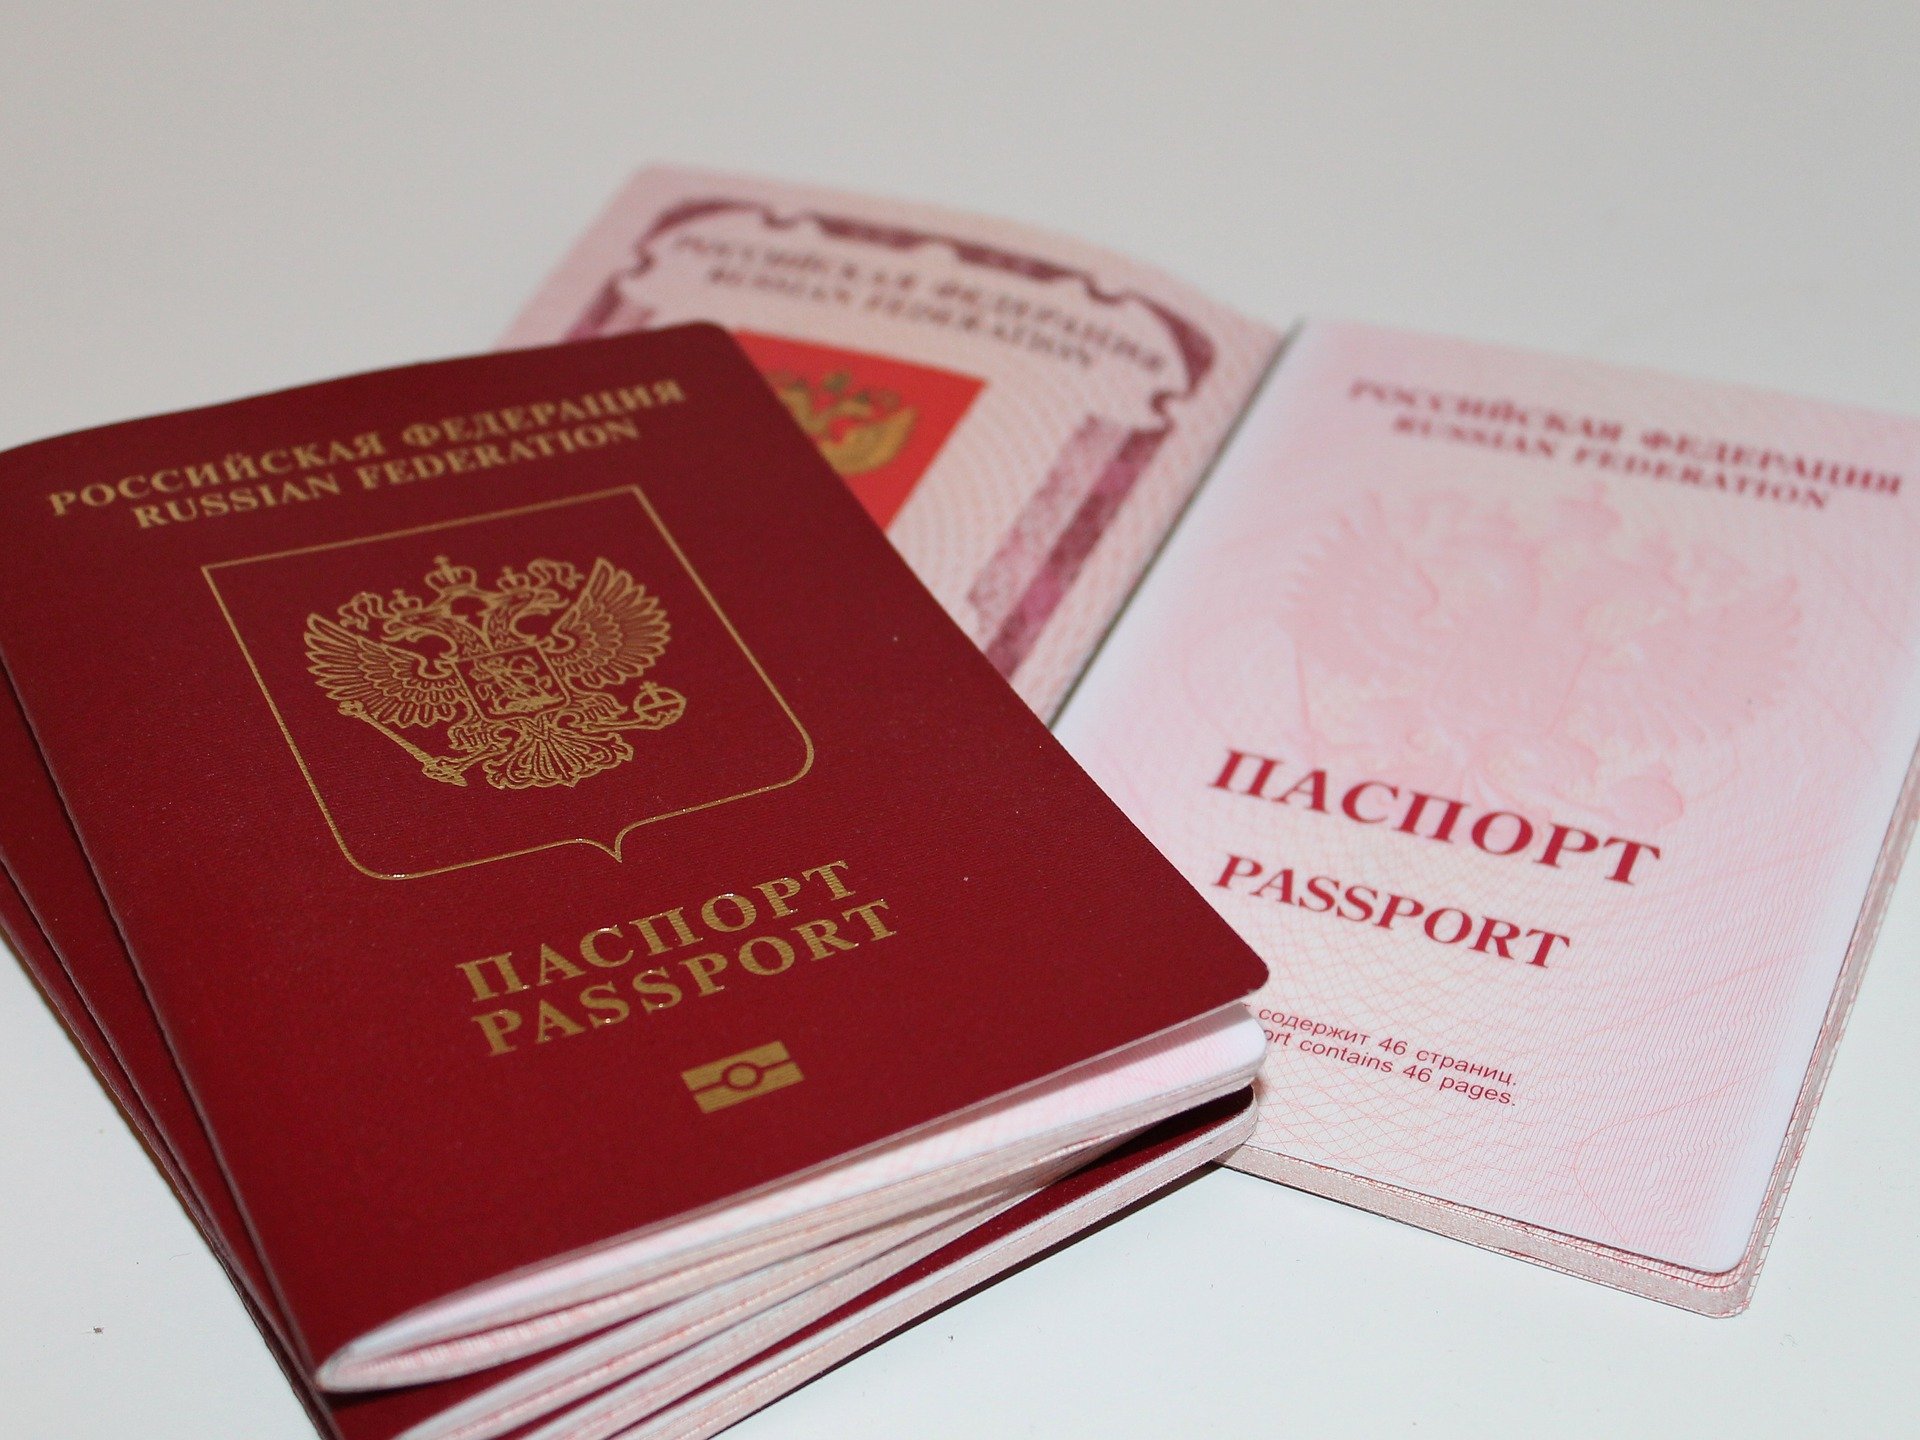 Фото на паспорт как лучше сфотографироваться